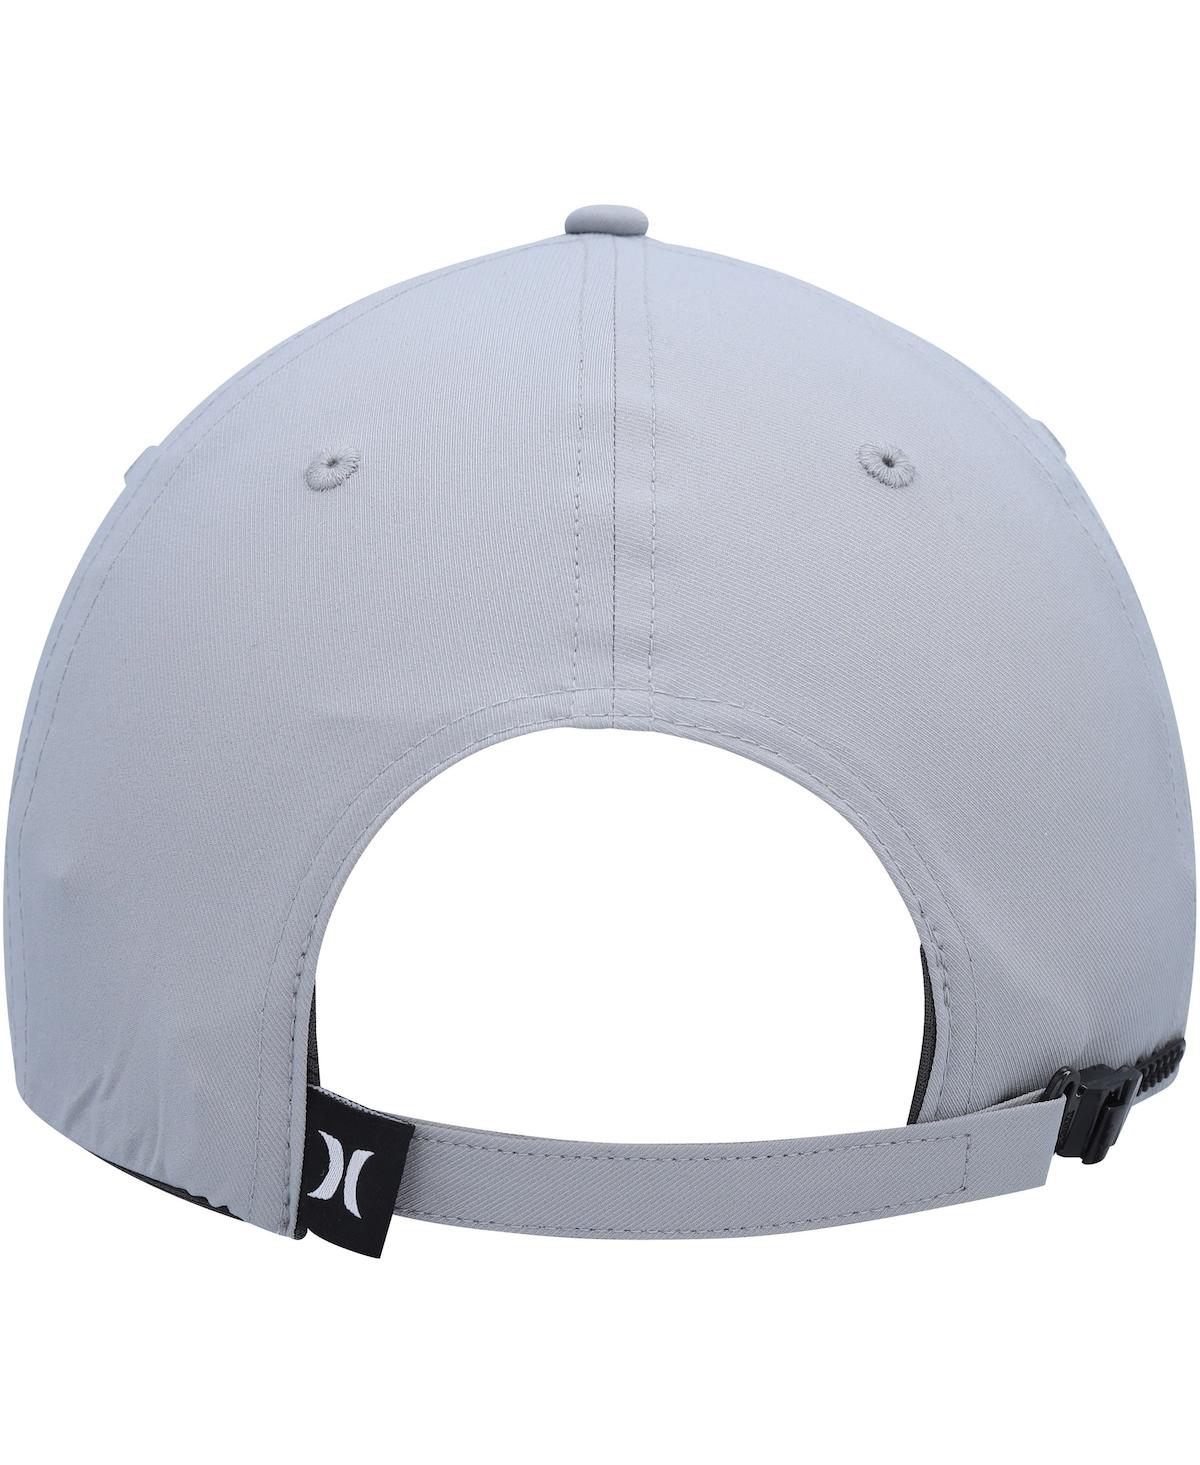 Shop Hurley Men's  Gray Phantom Ridge Zipperback Adjustable Hat